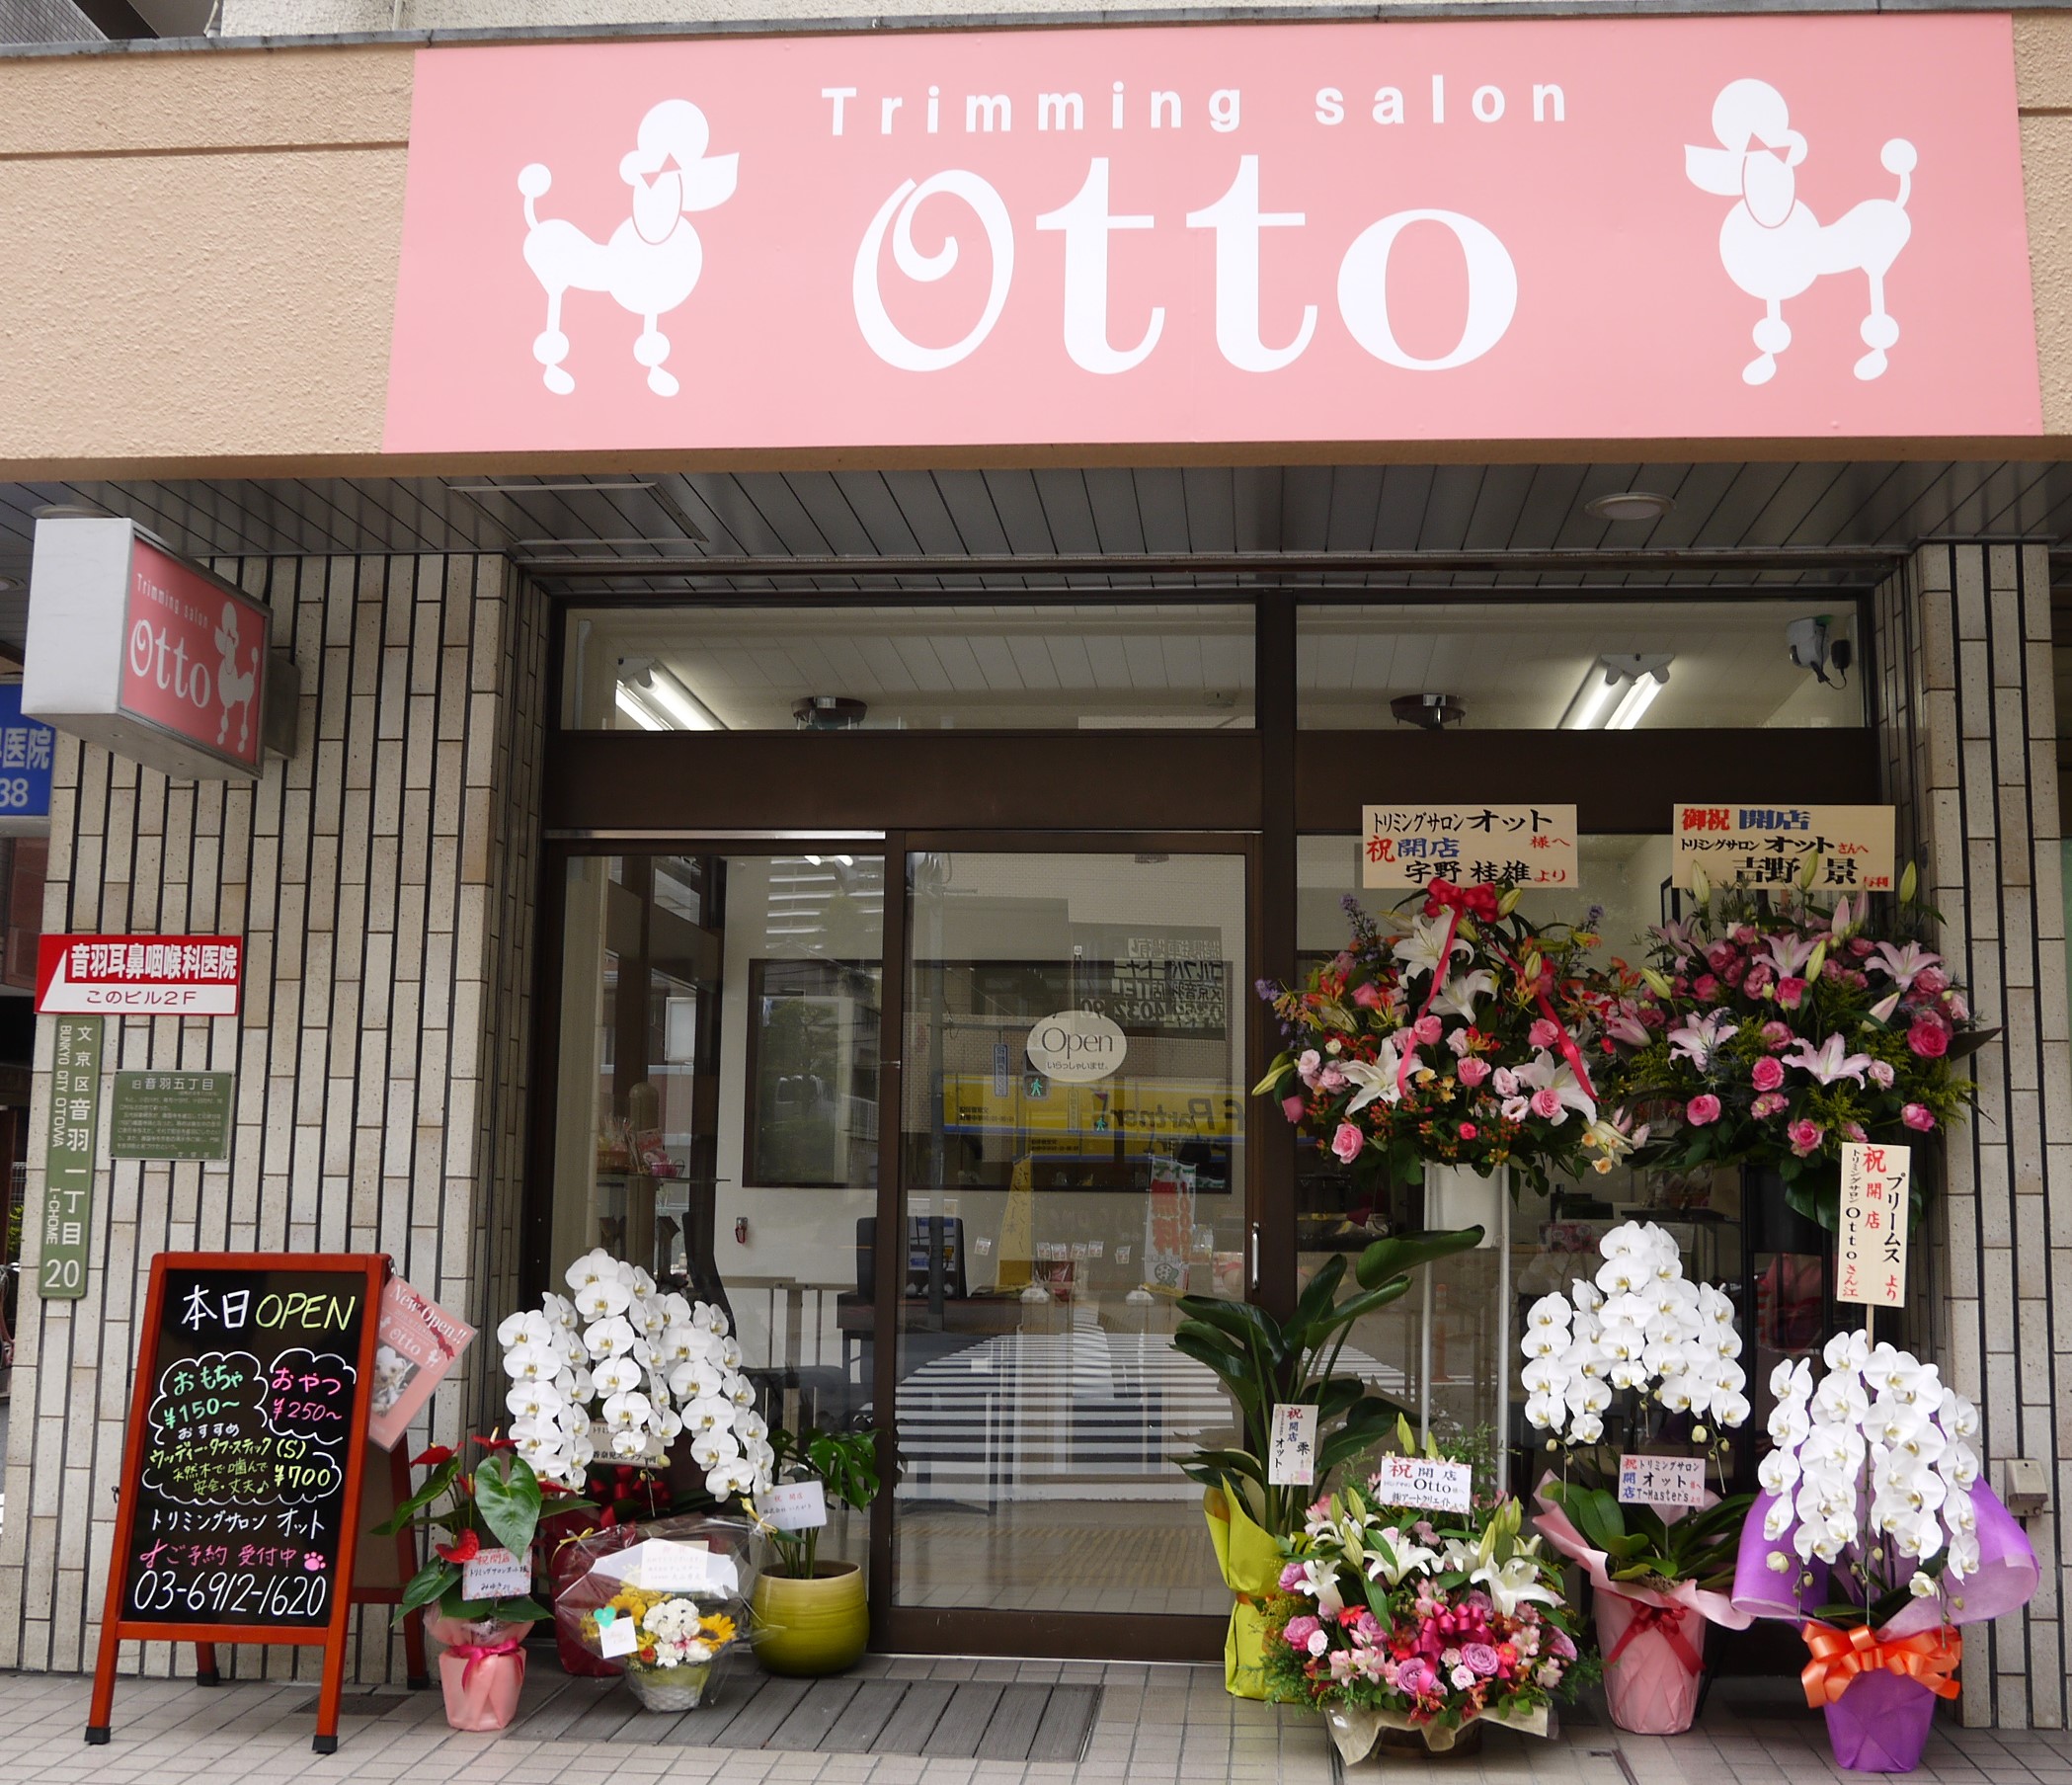 東京都文京区のトリミングサロン trimming salon Ottoの1枚目